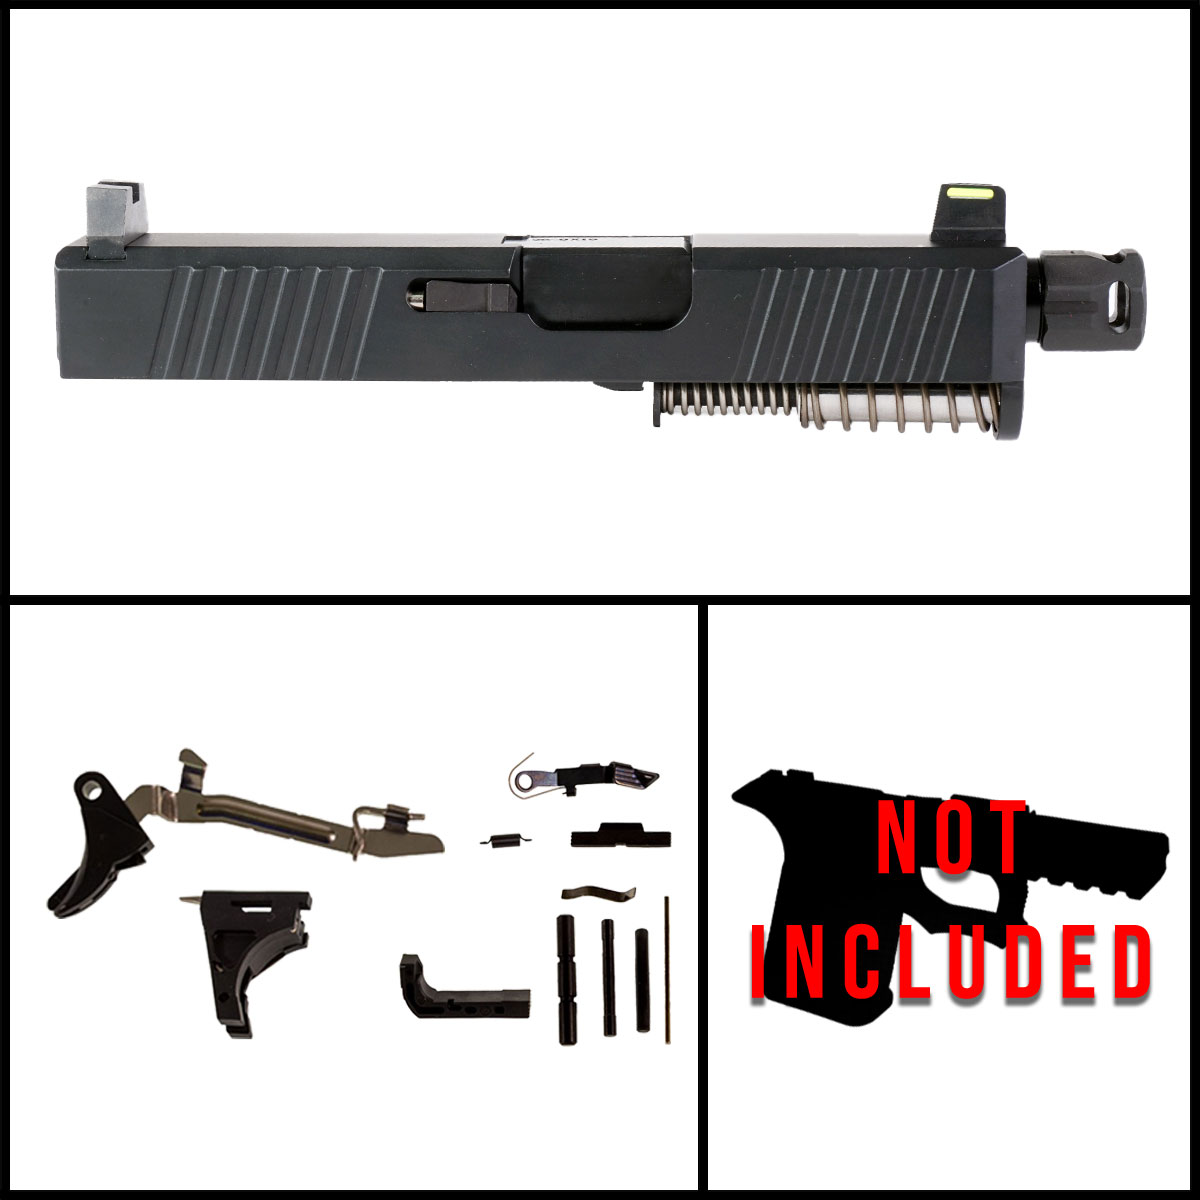 DDS 'Providence Power' 9mm Full Gun Kit - Glock 26 Gen 1-3 Compatible